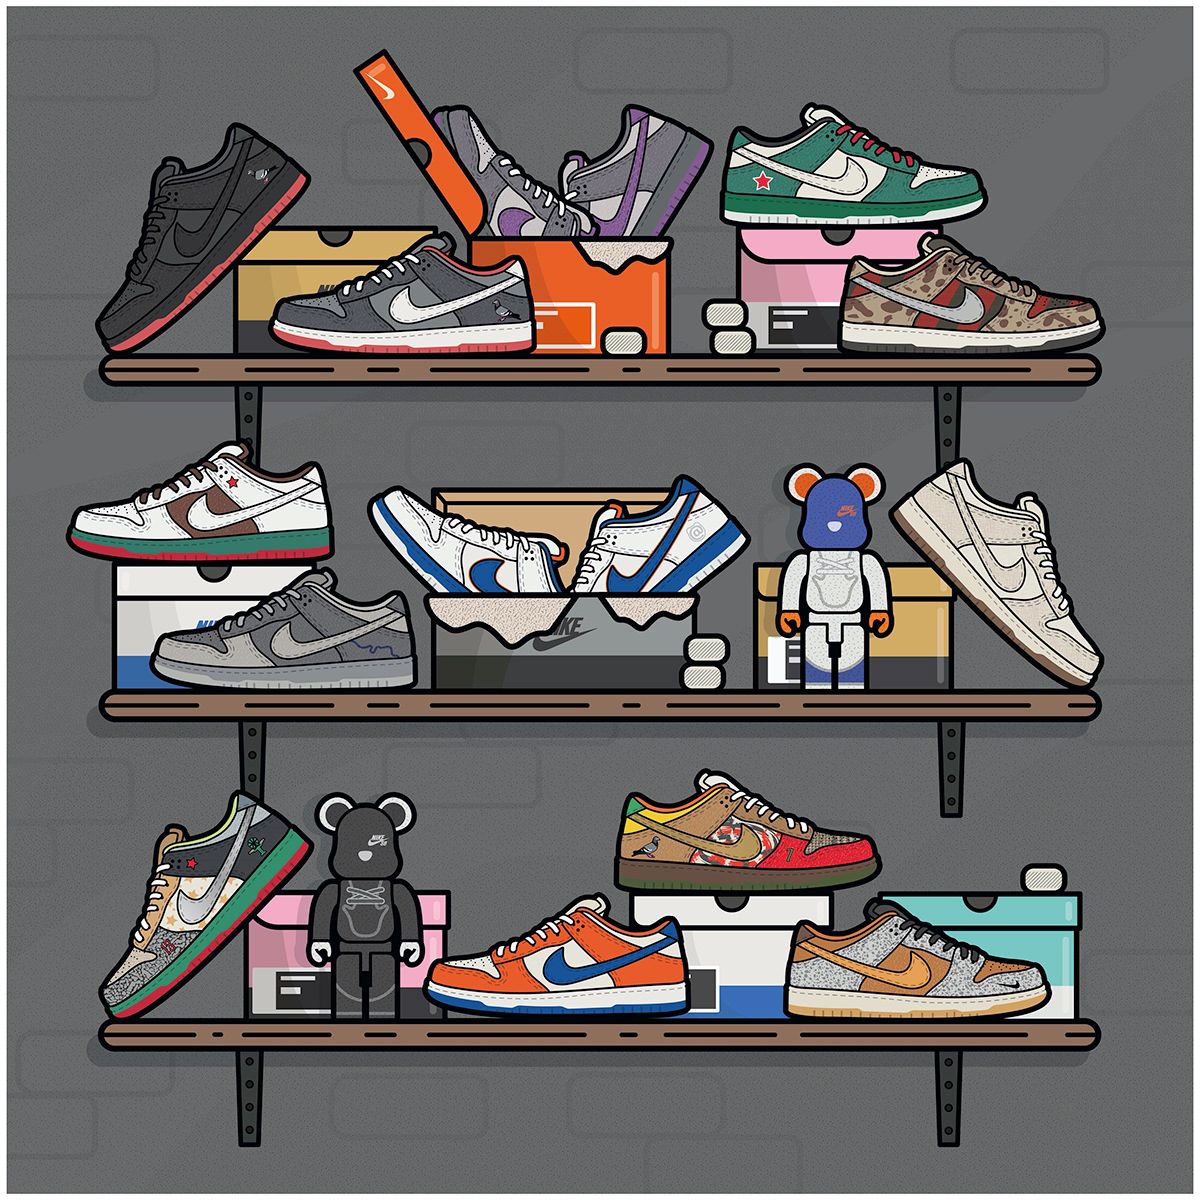 Shoes ideas. sneakers wallpaper, sneaker art, shoes wallpaper